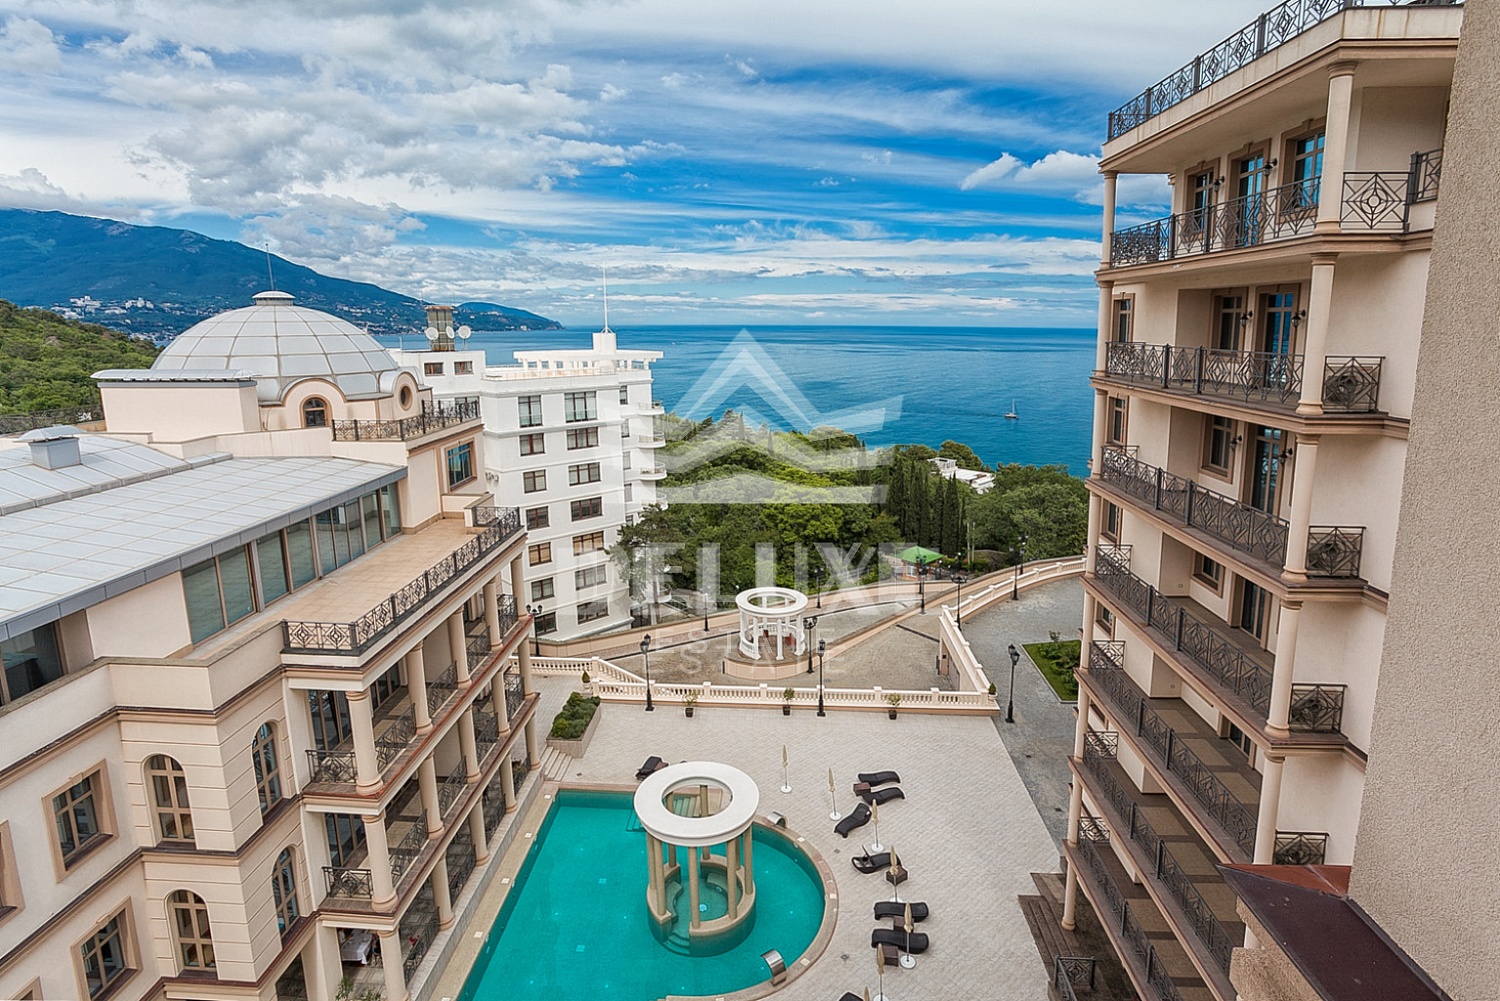 3-комнатные Апартаменты с видом на море и горы в элитном жилом комплексе Дипломат!